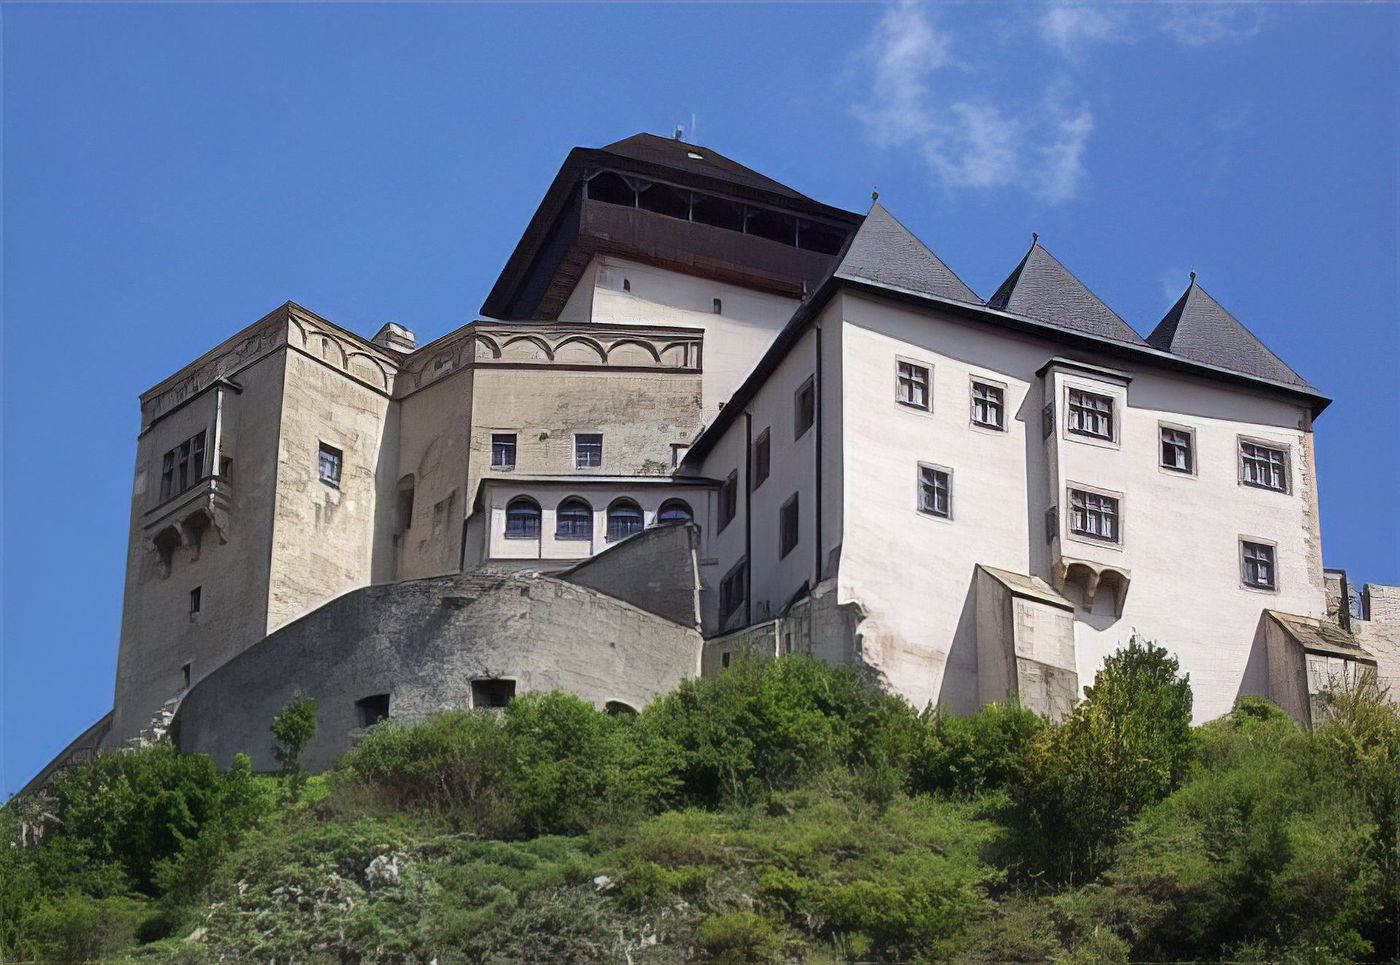 Château de Trencin